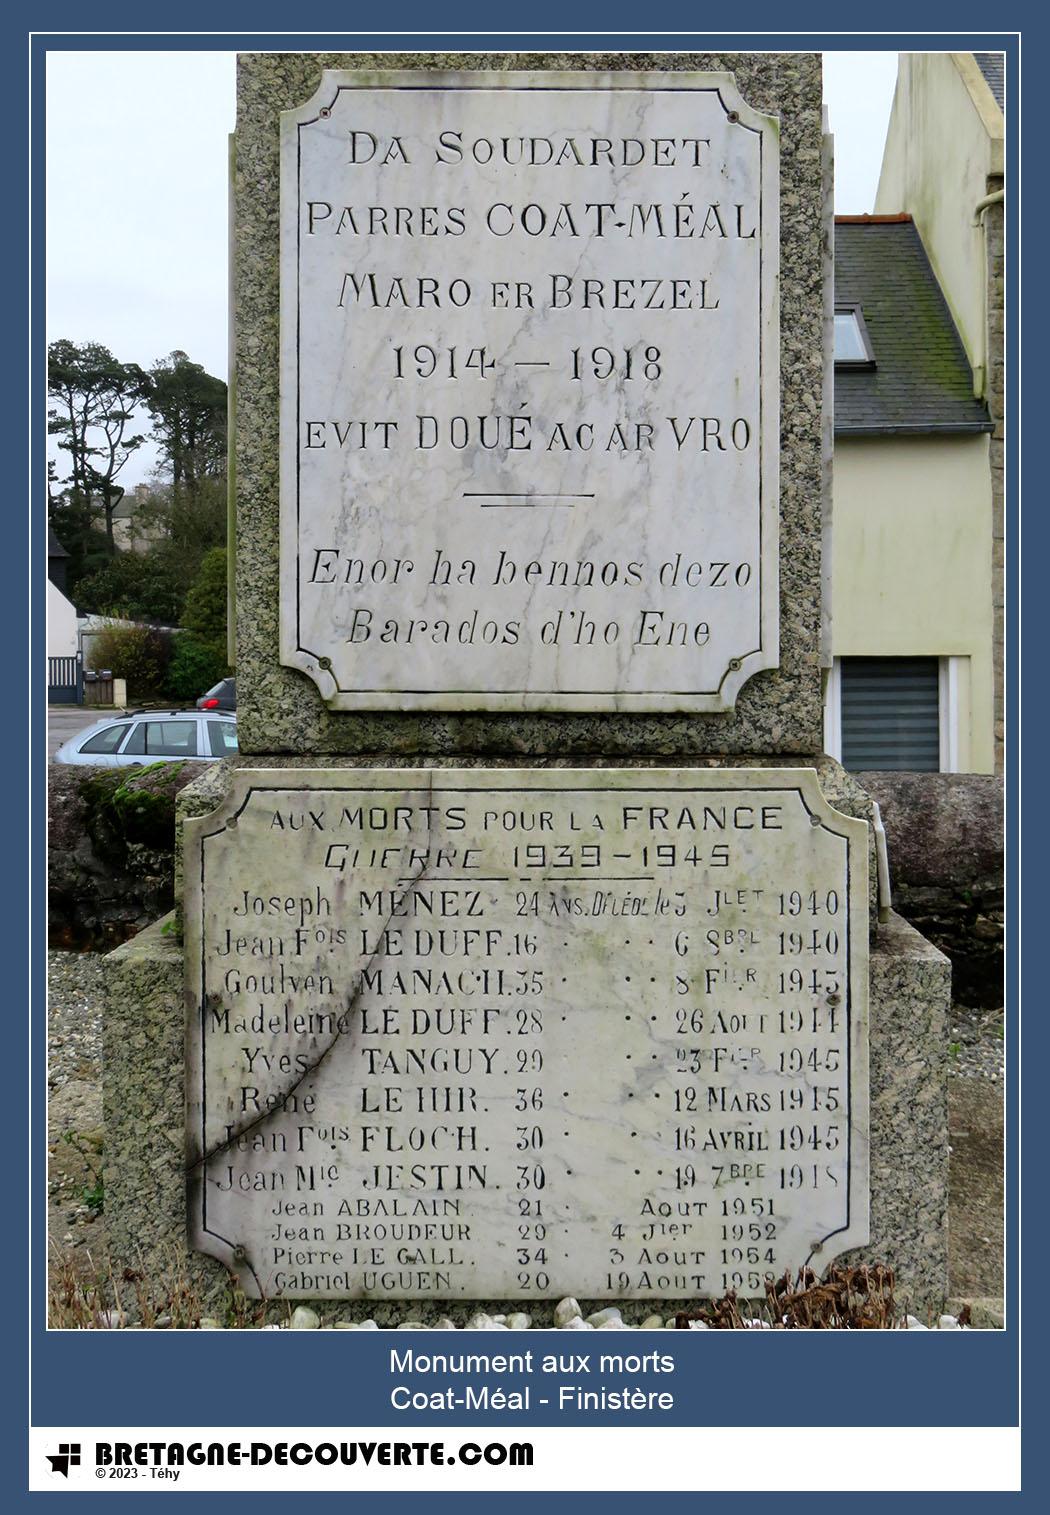 Les noms gravés sur le monument aux morts de Coat-Méal